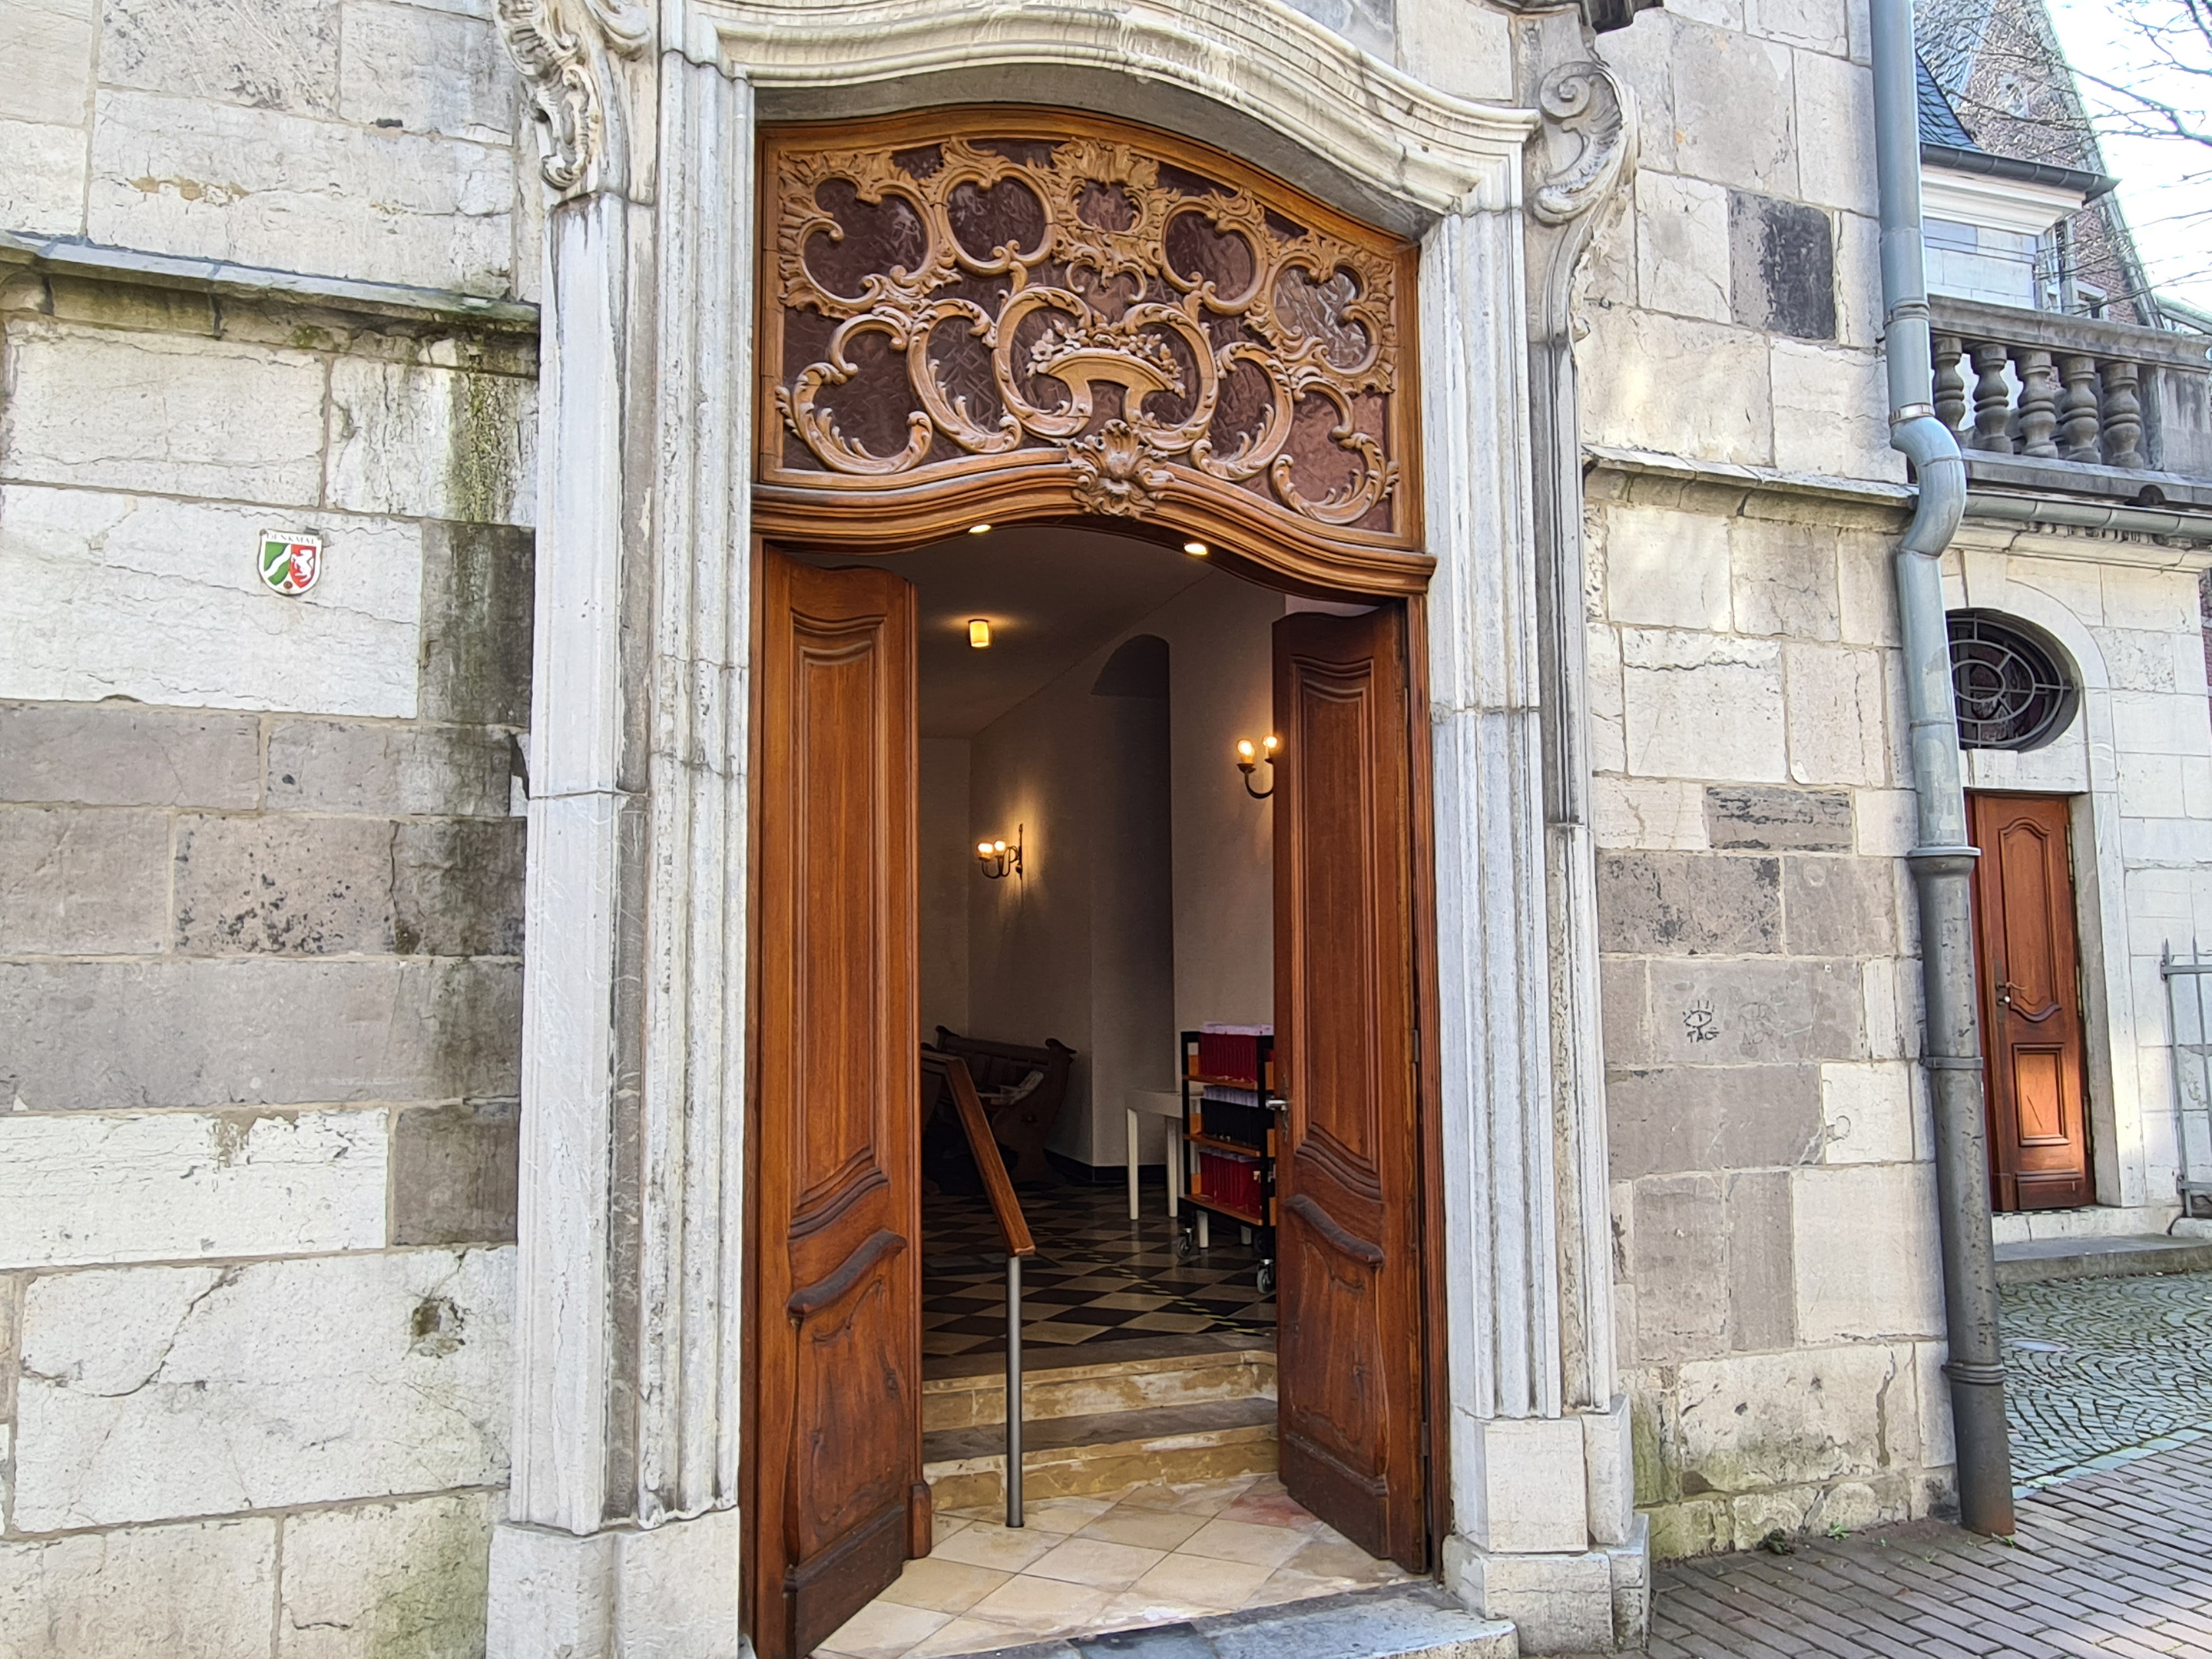 Eine offene Holztür einer alten Kirche mit barocken Verzierungen.